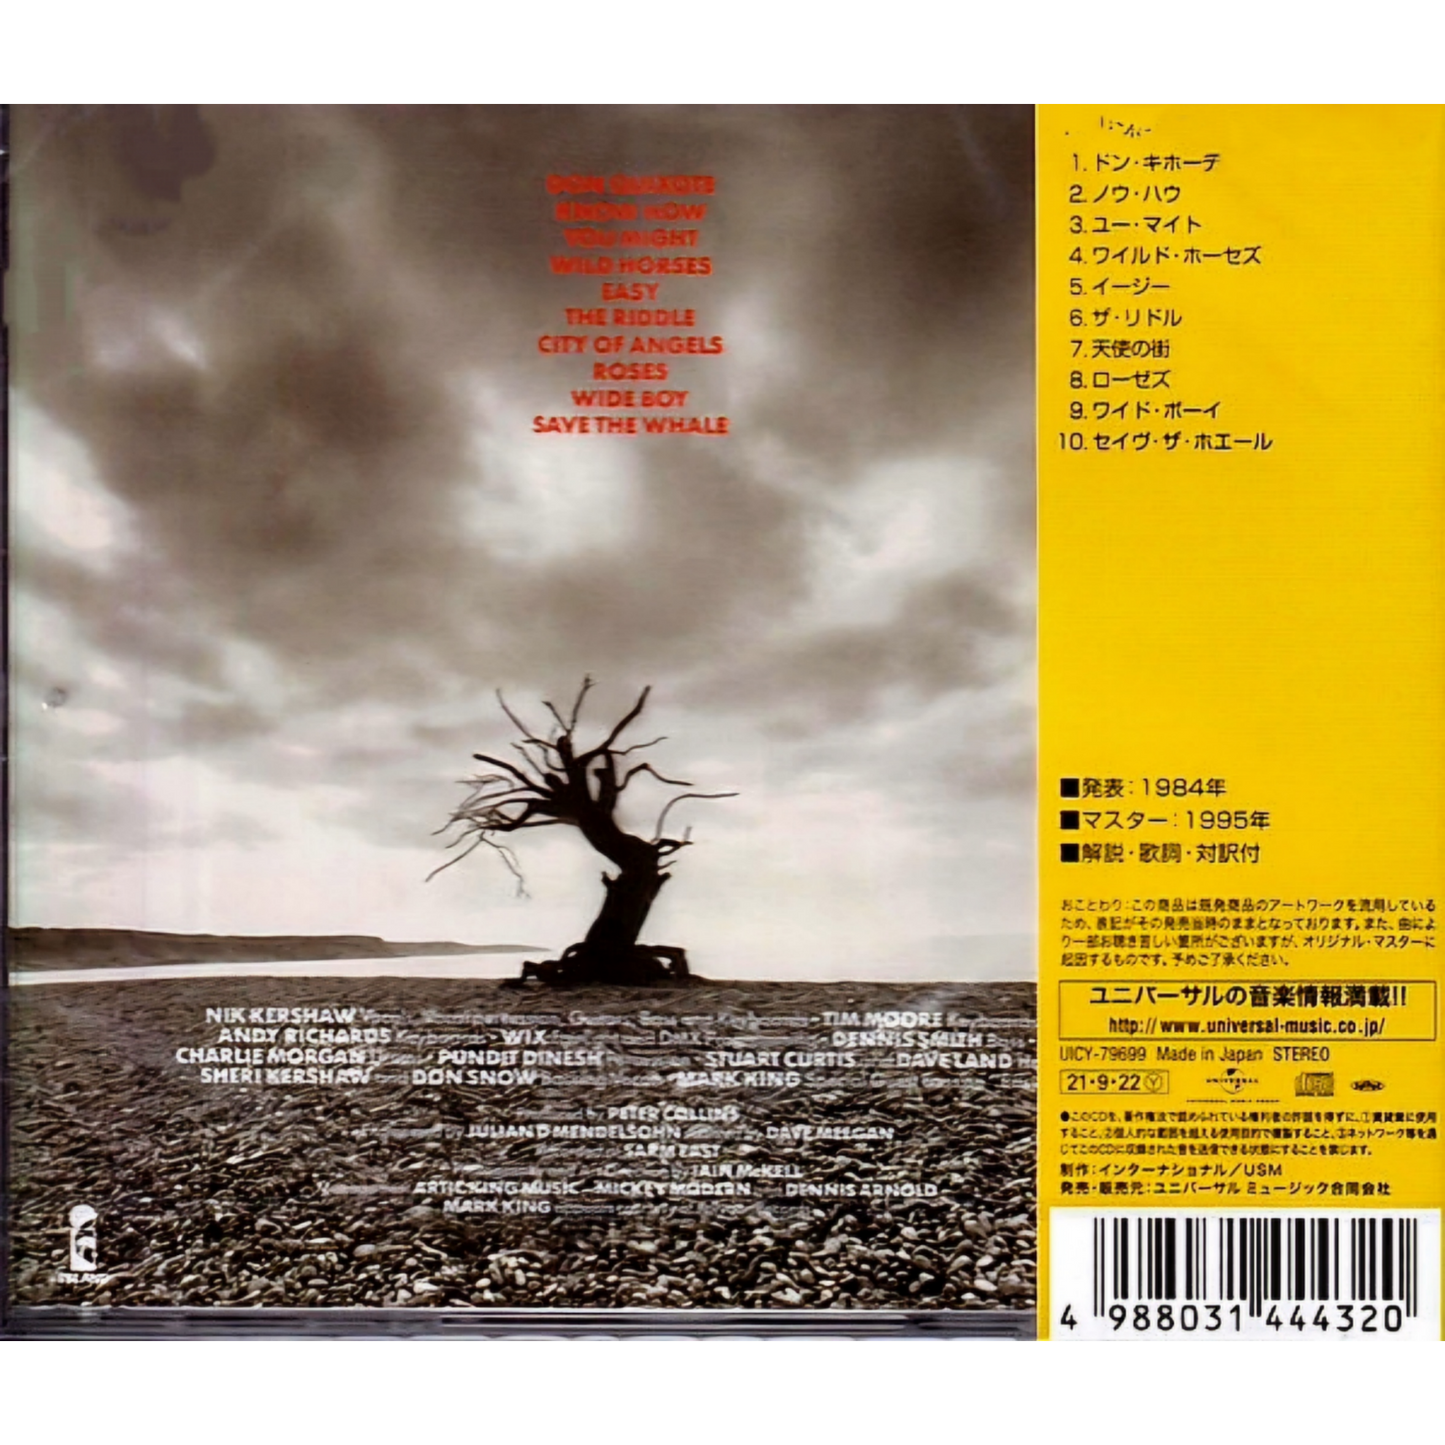 Nik Kershaw: The Riddle - Japanese CD Album